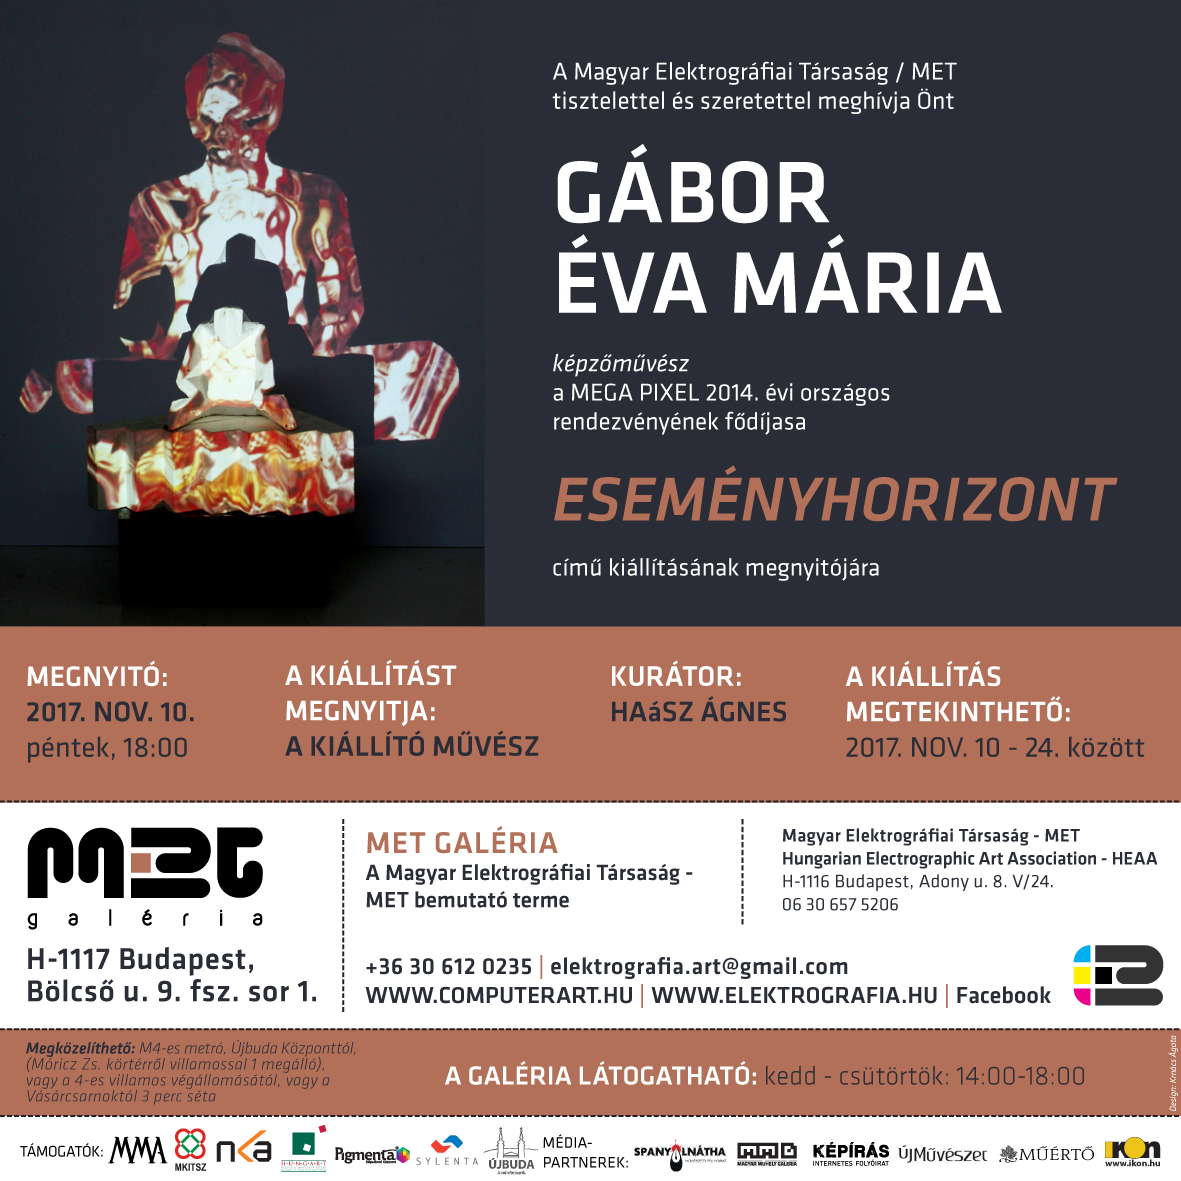 MET Galeria meghivo Gabor Eva Maria